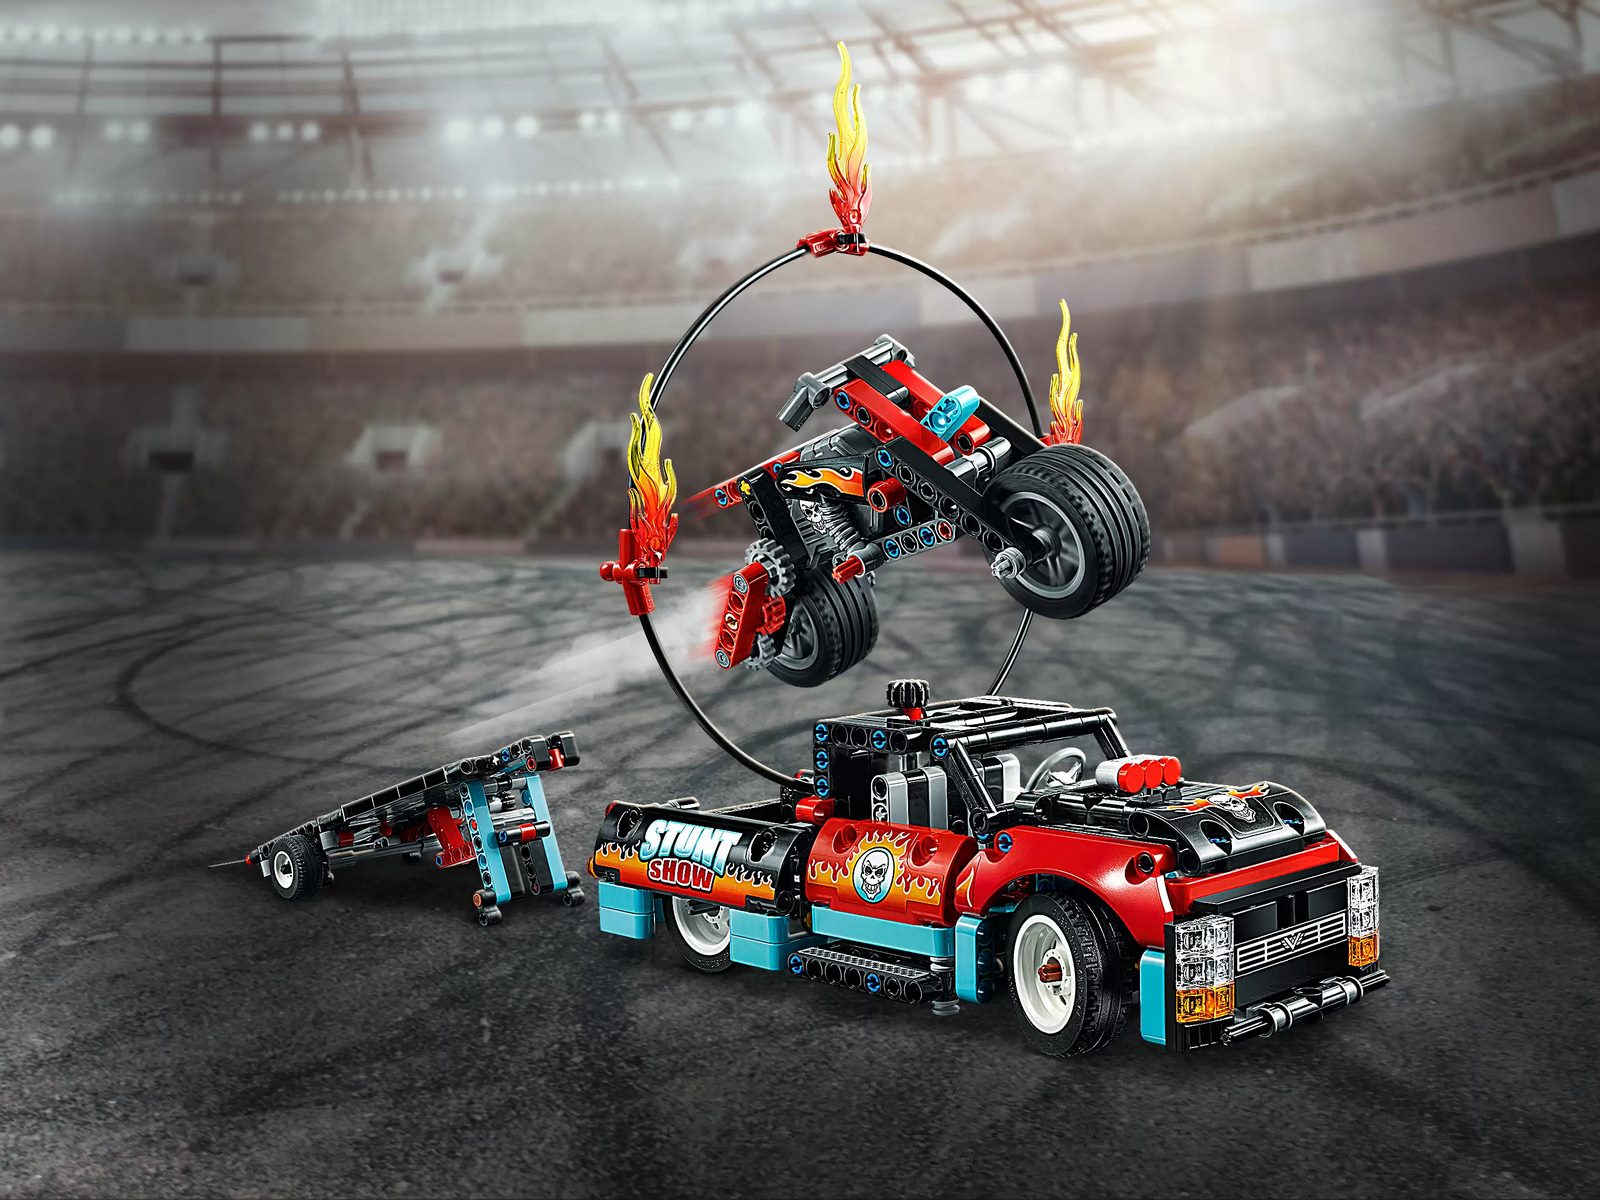 Конструктор LEGO Technic 42106 «Шоу трюков на грузовиках и мотоциклах» 610 деталей